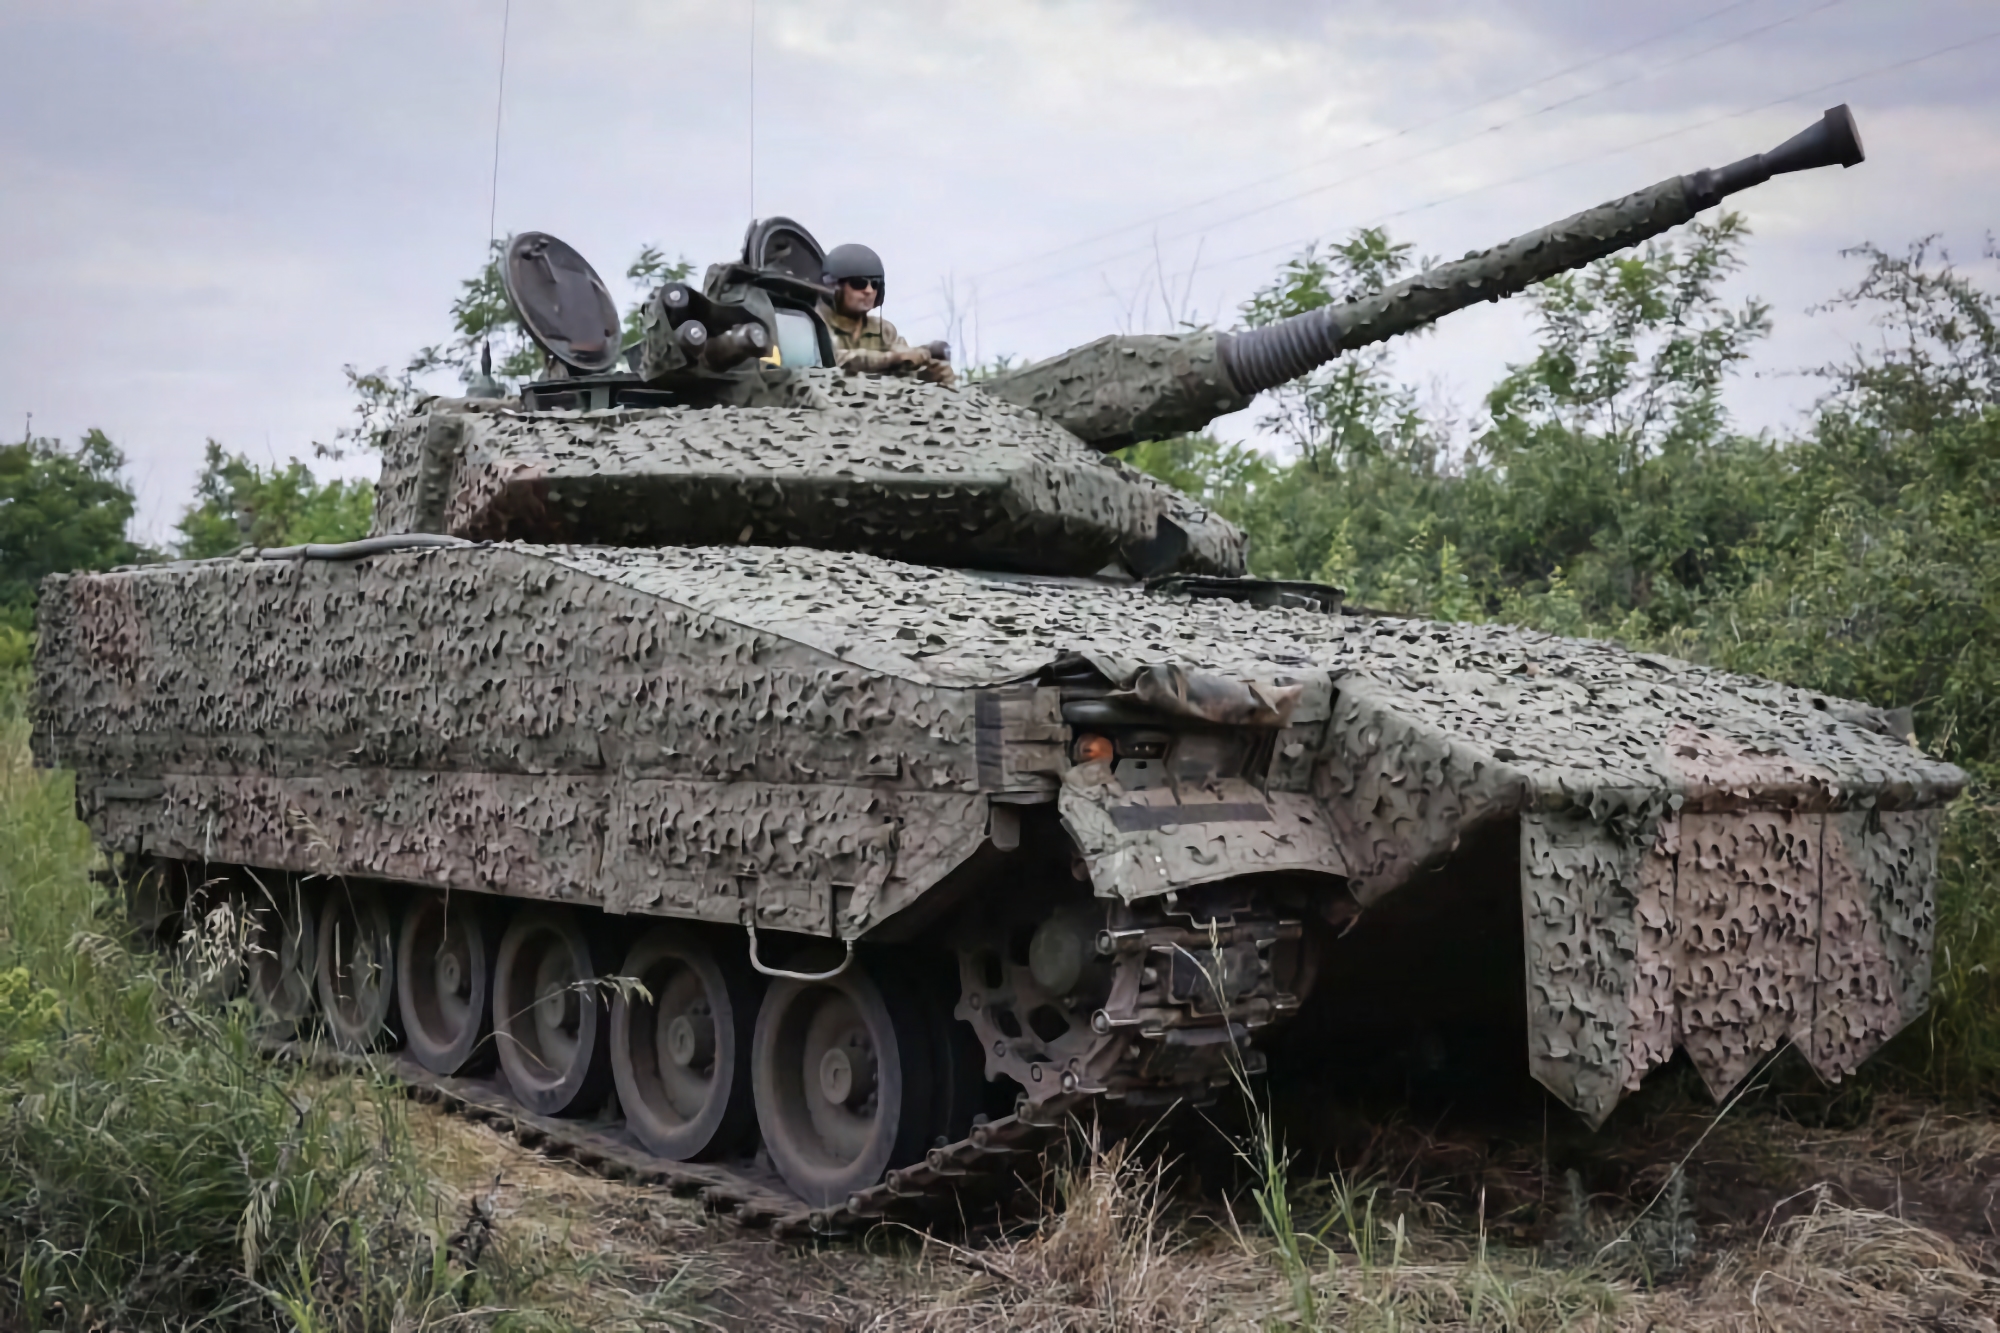 Des véhicules de combat d'infanterie CV90 suédois équipés de canons Bofors L70 de 40 mm ont été présentés par les forces armées ukrainiennes.